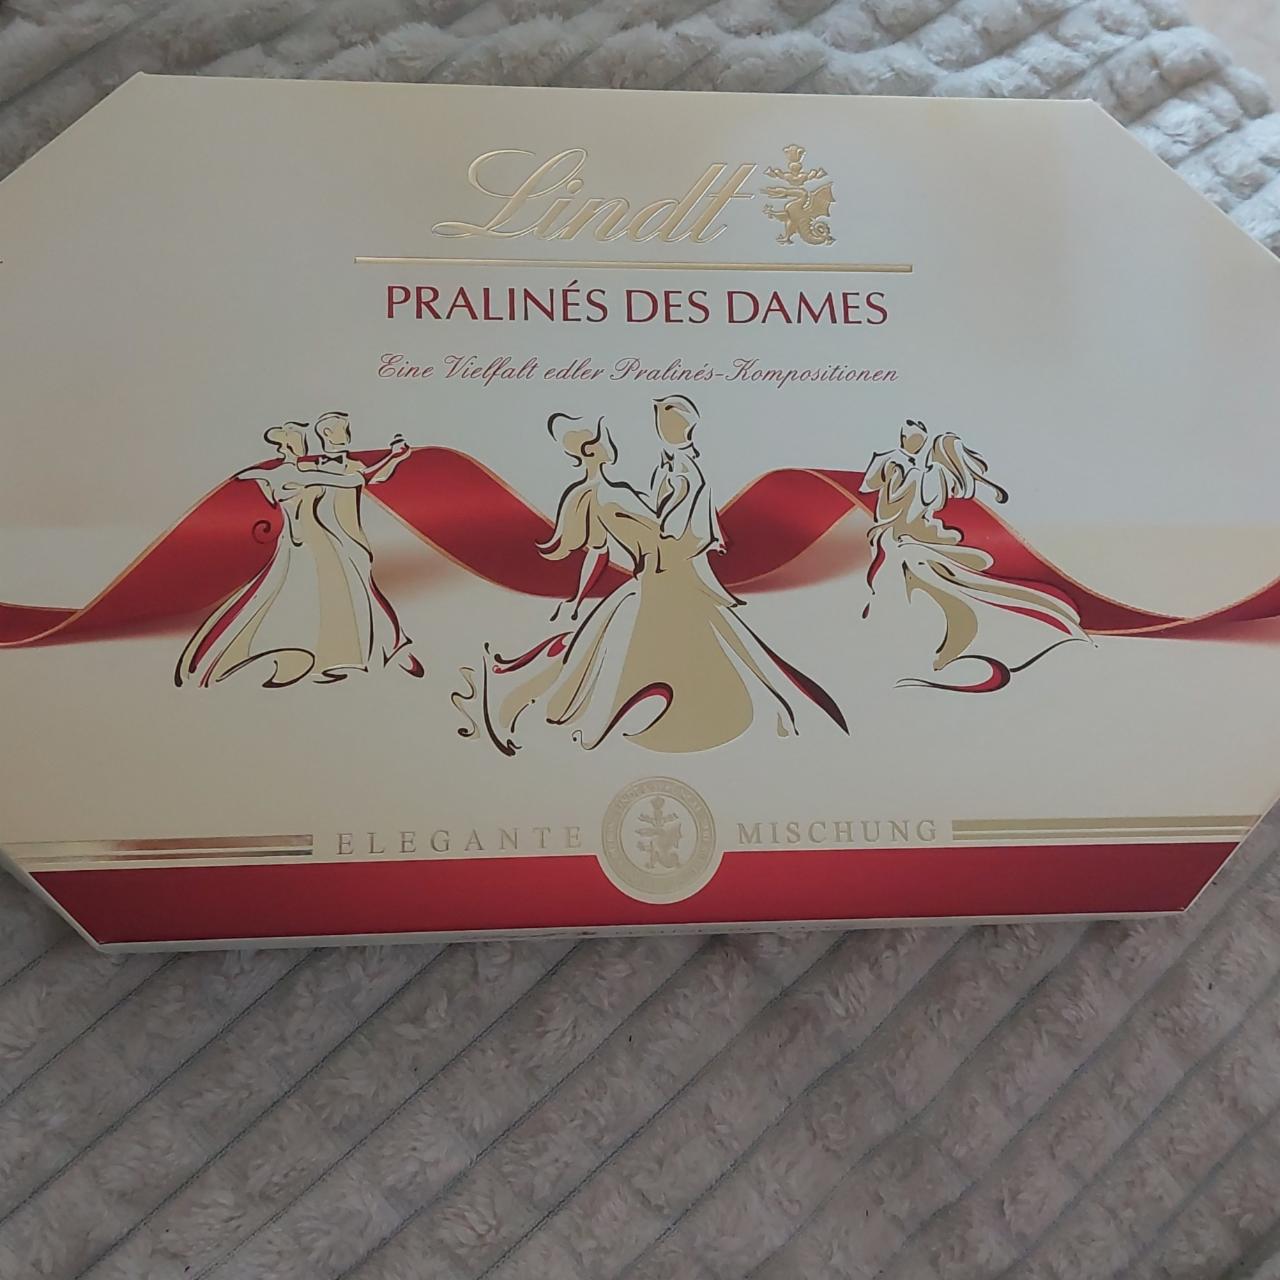 Фото - Шоколадные конфеты pralines des dames Lindt